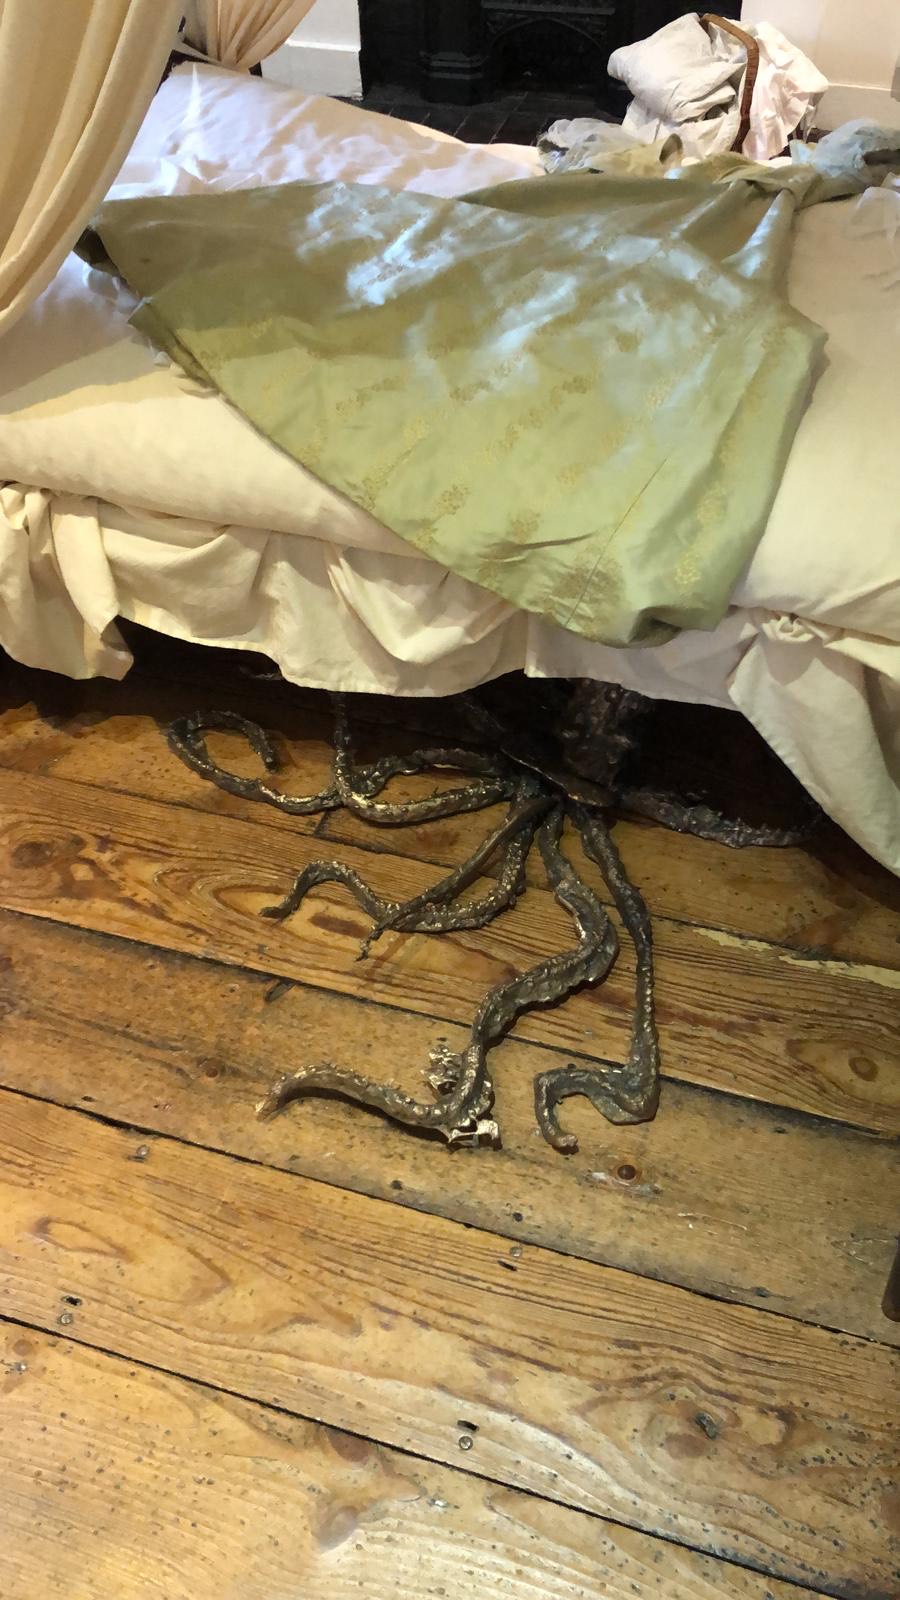 'Octopus' by Rups Cregeen, on display in Jane Austen's Bedroom